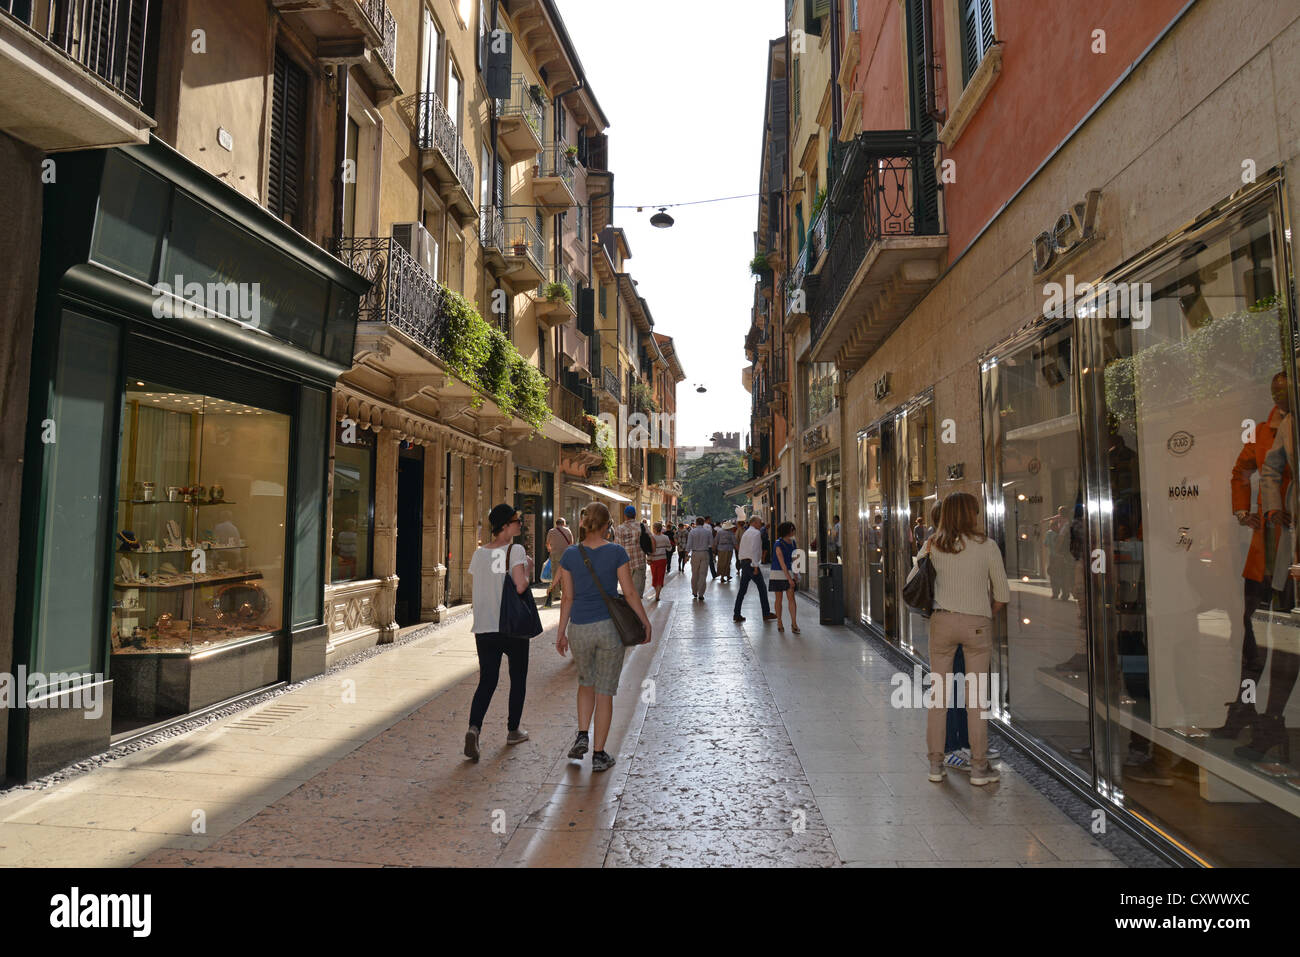 Via Mazzini (calle comercial), Verona, provincia de Verona, Región de Véneto, Italia Foto de stock